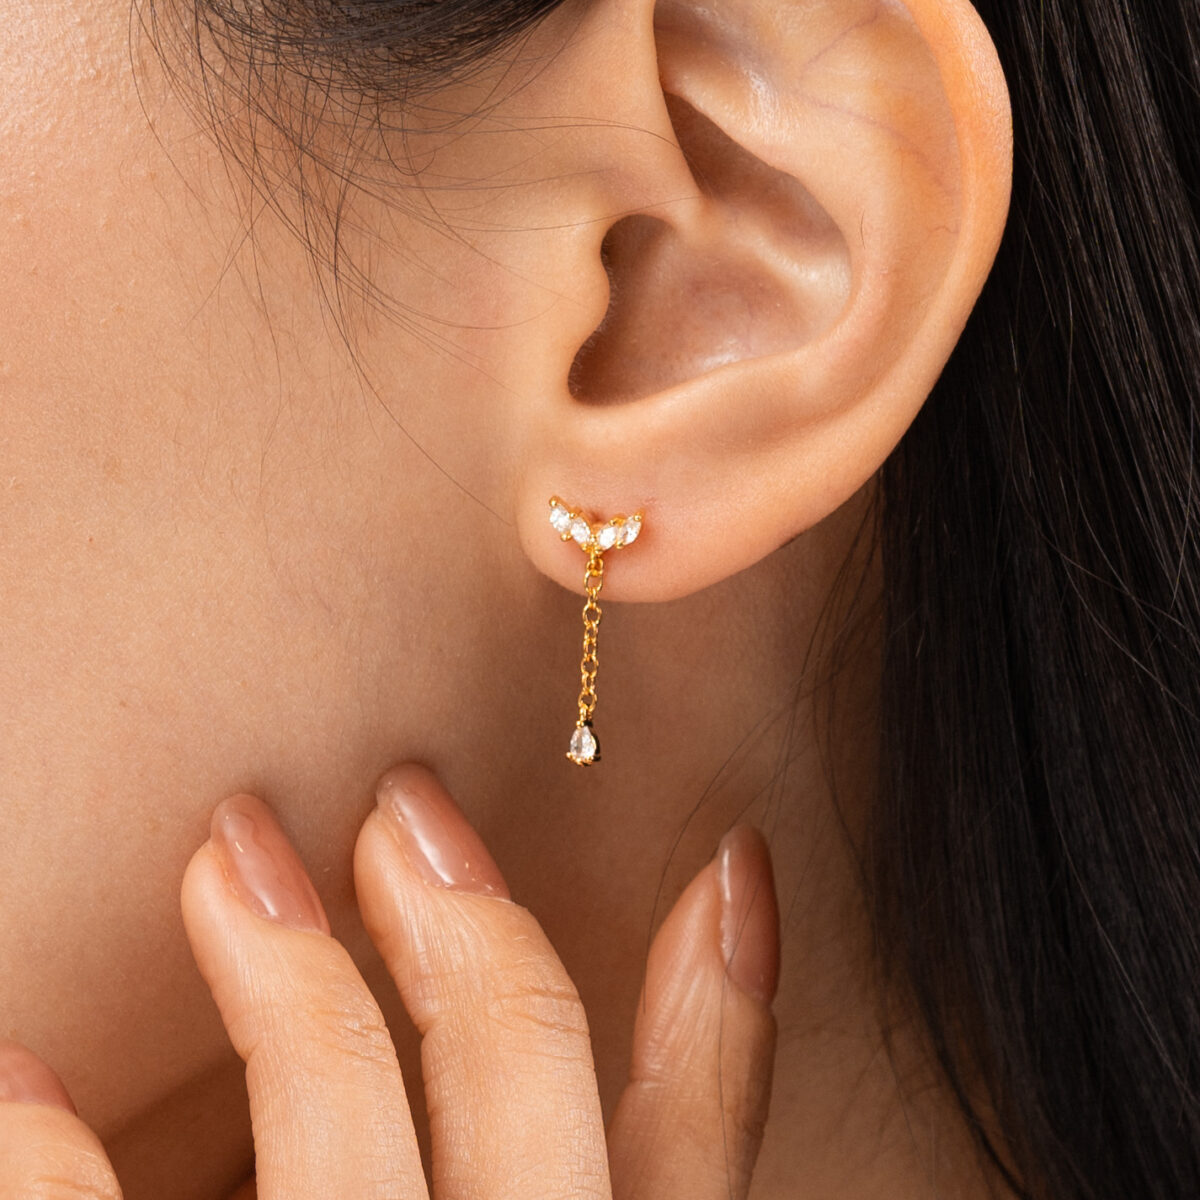 https://m.clubbella.co/product/helix-earrings-24k-gold-plated/ HELIX EARRINGS (1)